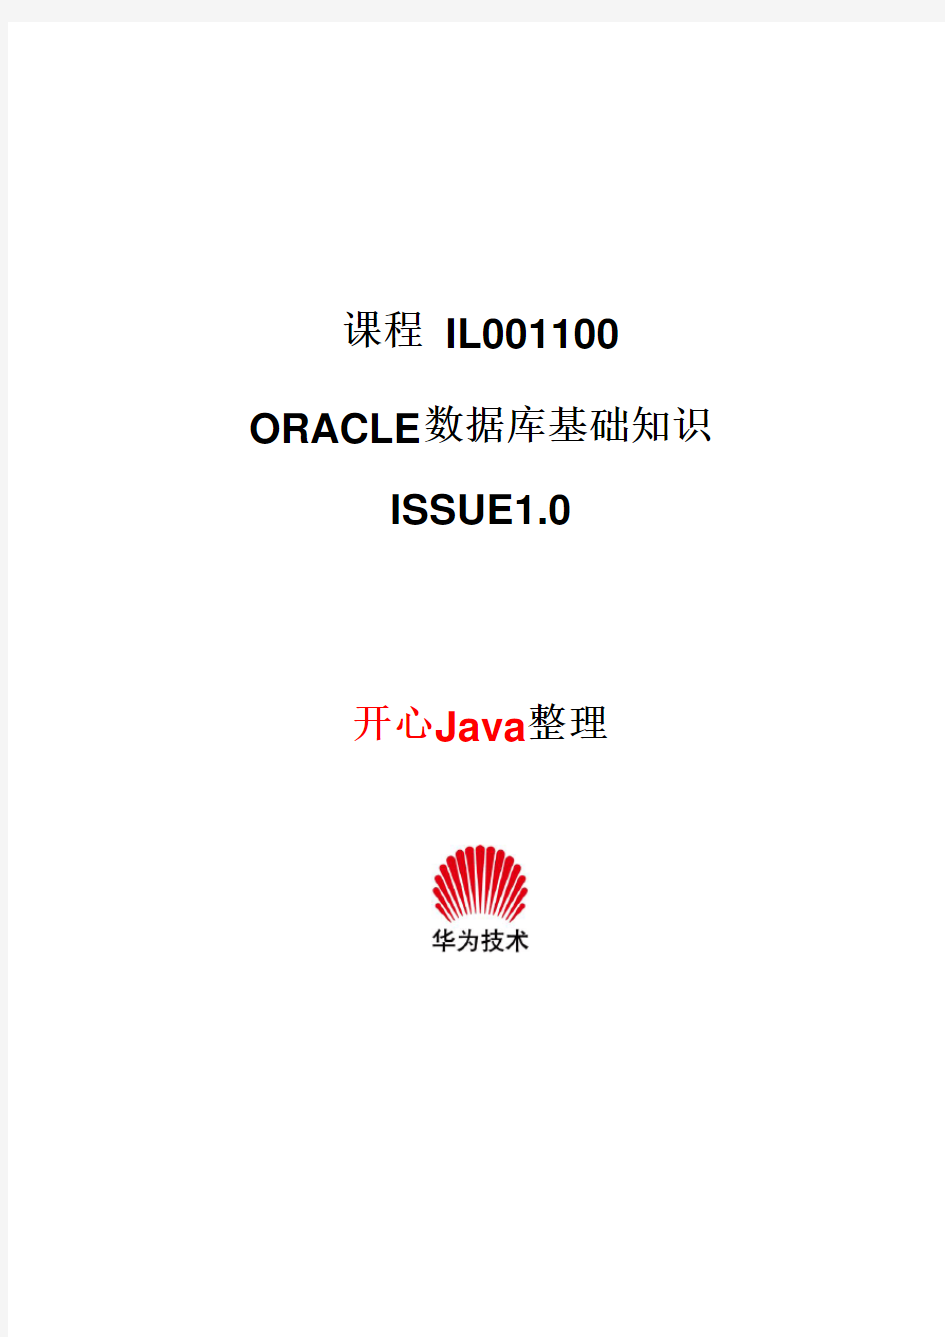 Oracle数据库基础知识(华为内部培训资料)